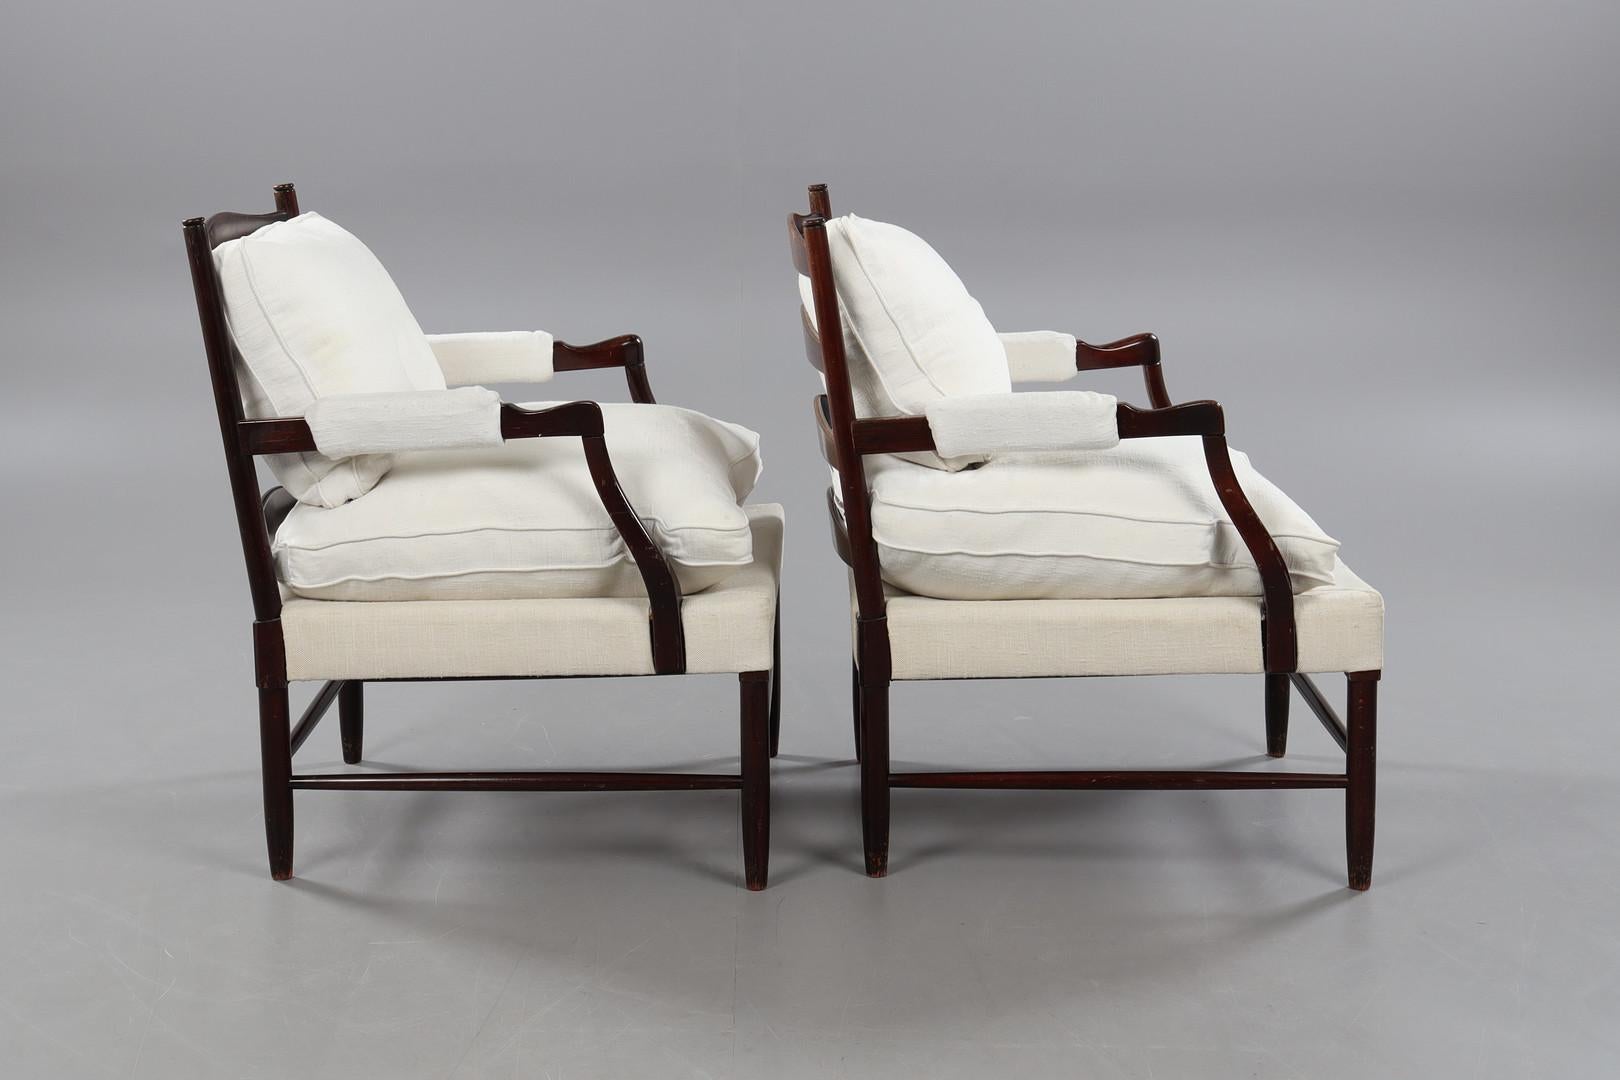 Les deux fauteuils Gripsholm, conçus par Arne Norell, sont d'authentiques joyaux de l'élégance et de la fonctionnalité du design scandinave. Fabriqués en bois de hêtre, ces fauteuils incarnent la simplicité raffinée et la durabilité caractéristiques